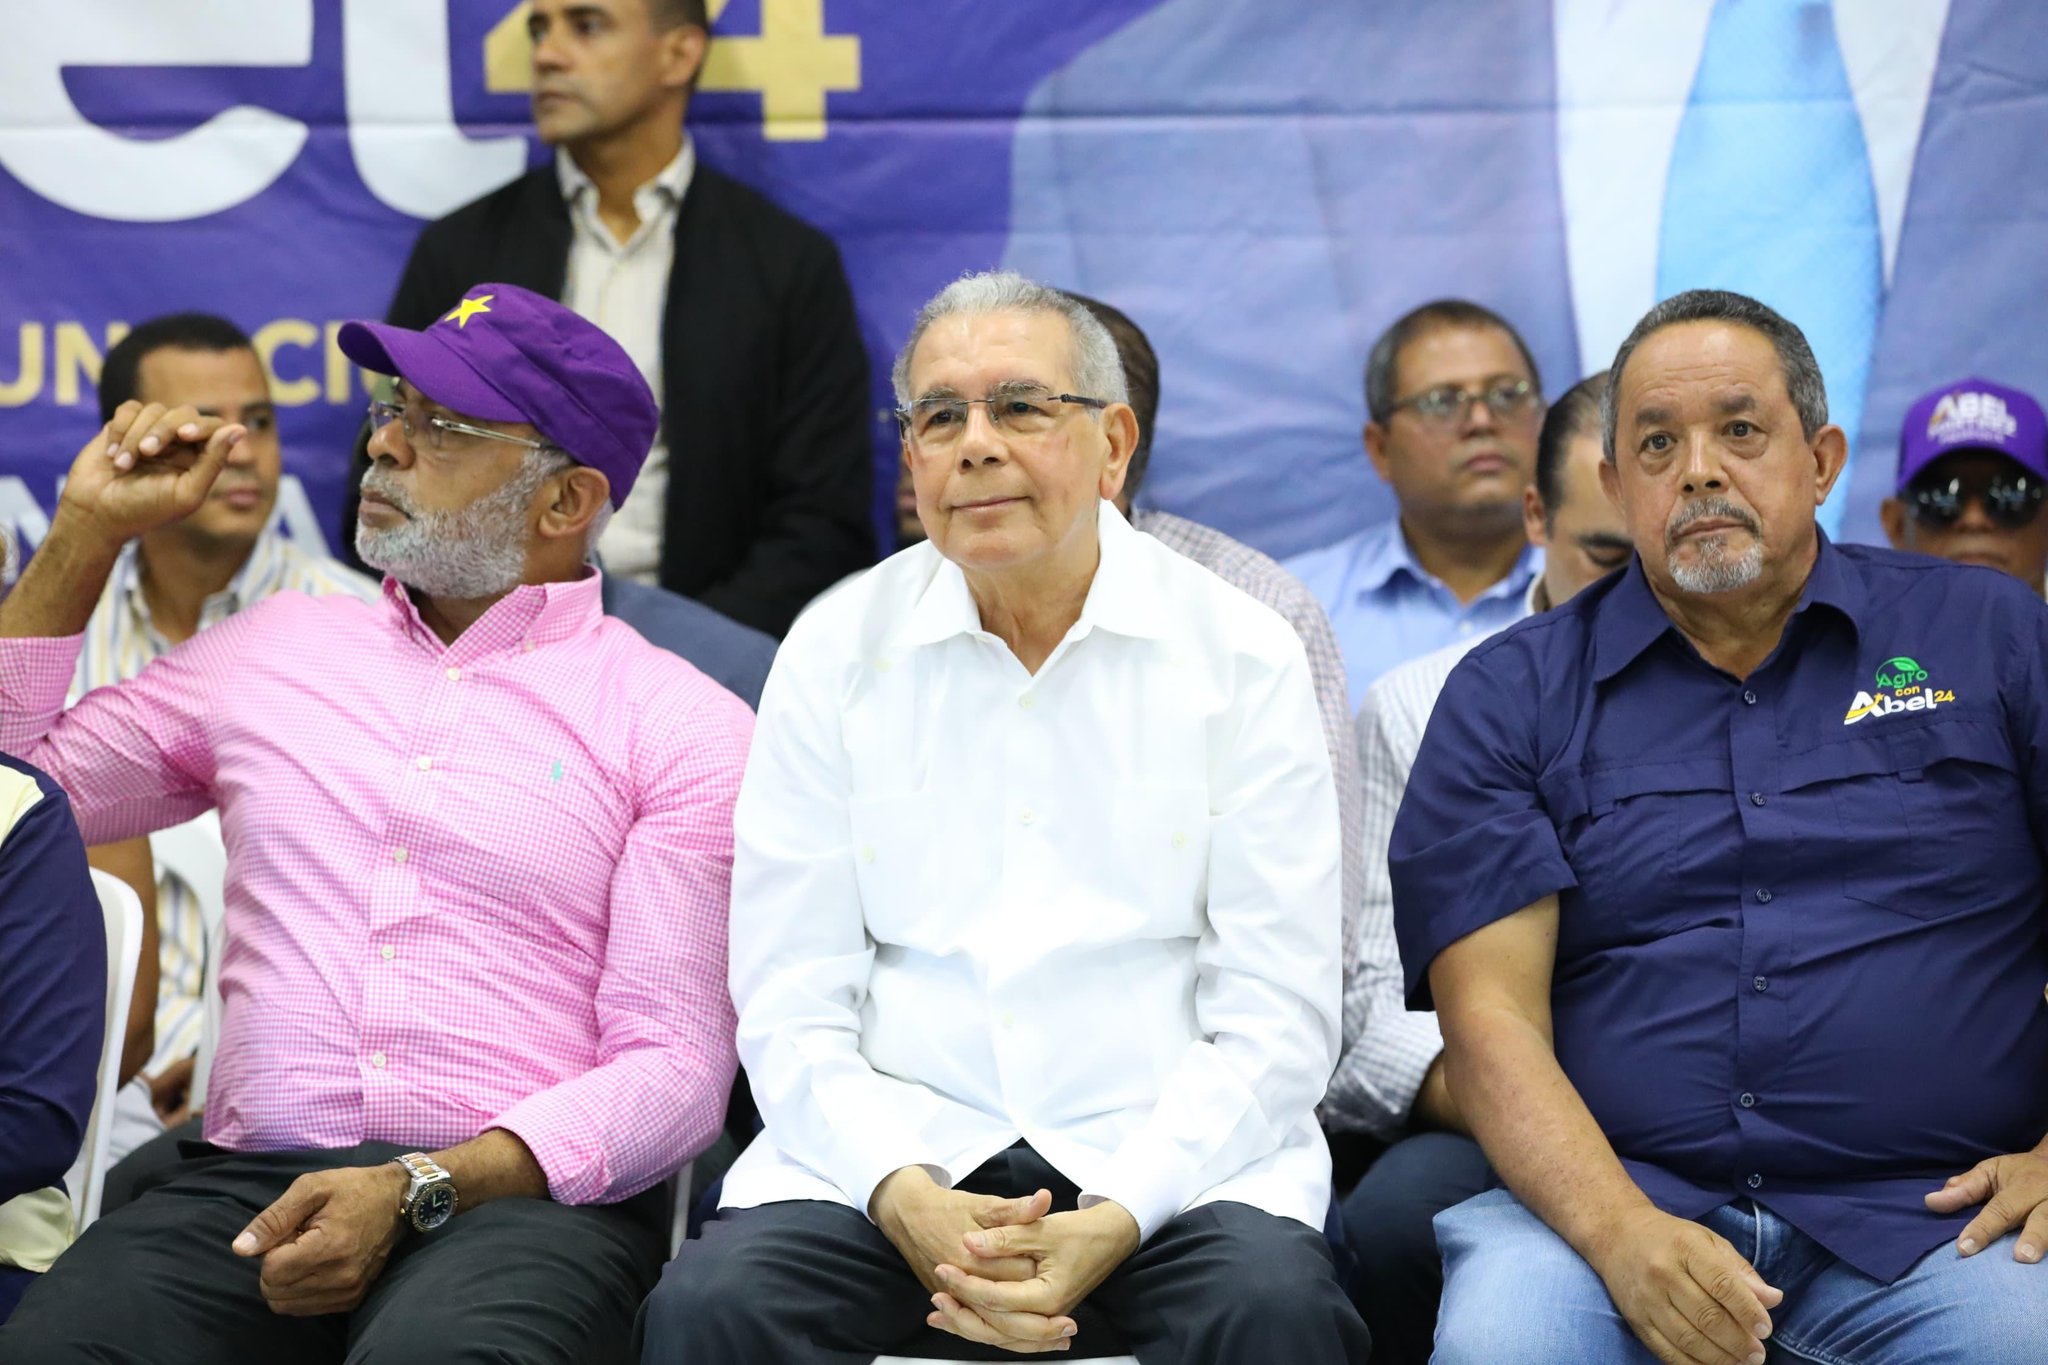 Danilo Medina: «Vamos a sacar muchos más votos que el Gobierno, con todos sus recursos»